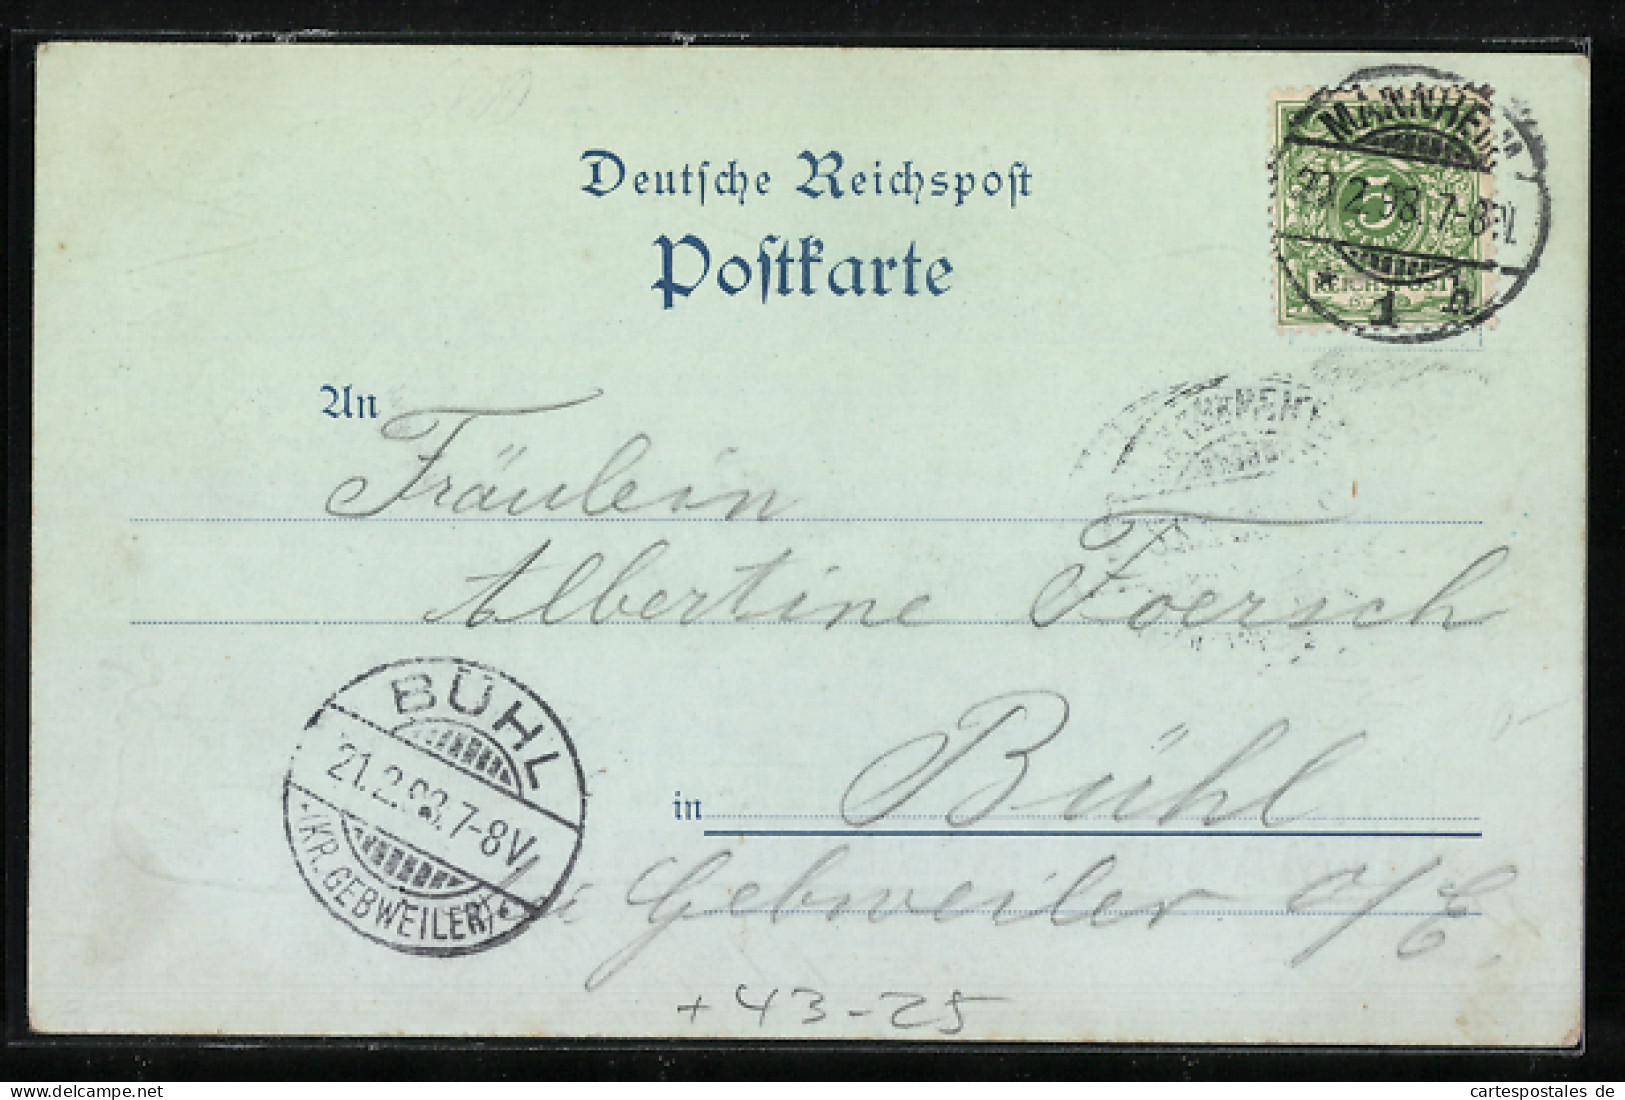 Künstler-AK Mannheim, Schnitter- & Winzerfest Der Mannheimer Liedertafel 1898, Strassenumzug  - Other & Unclassified